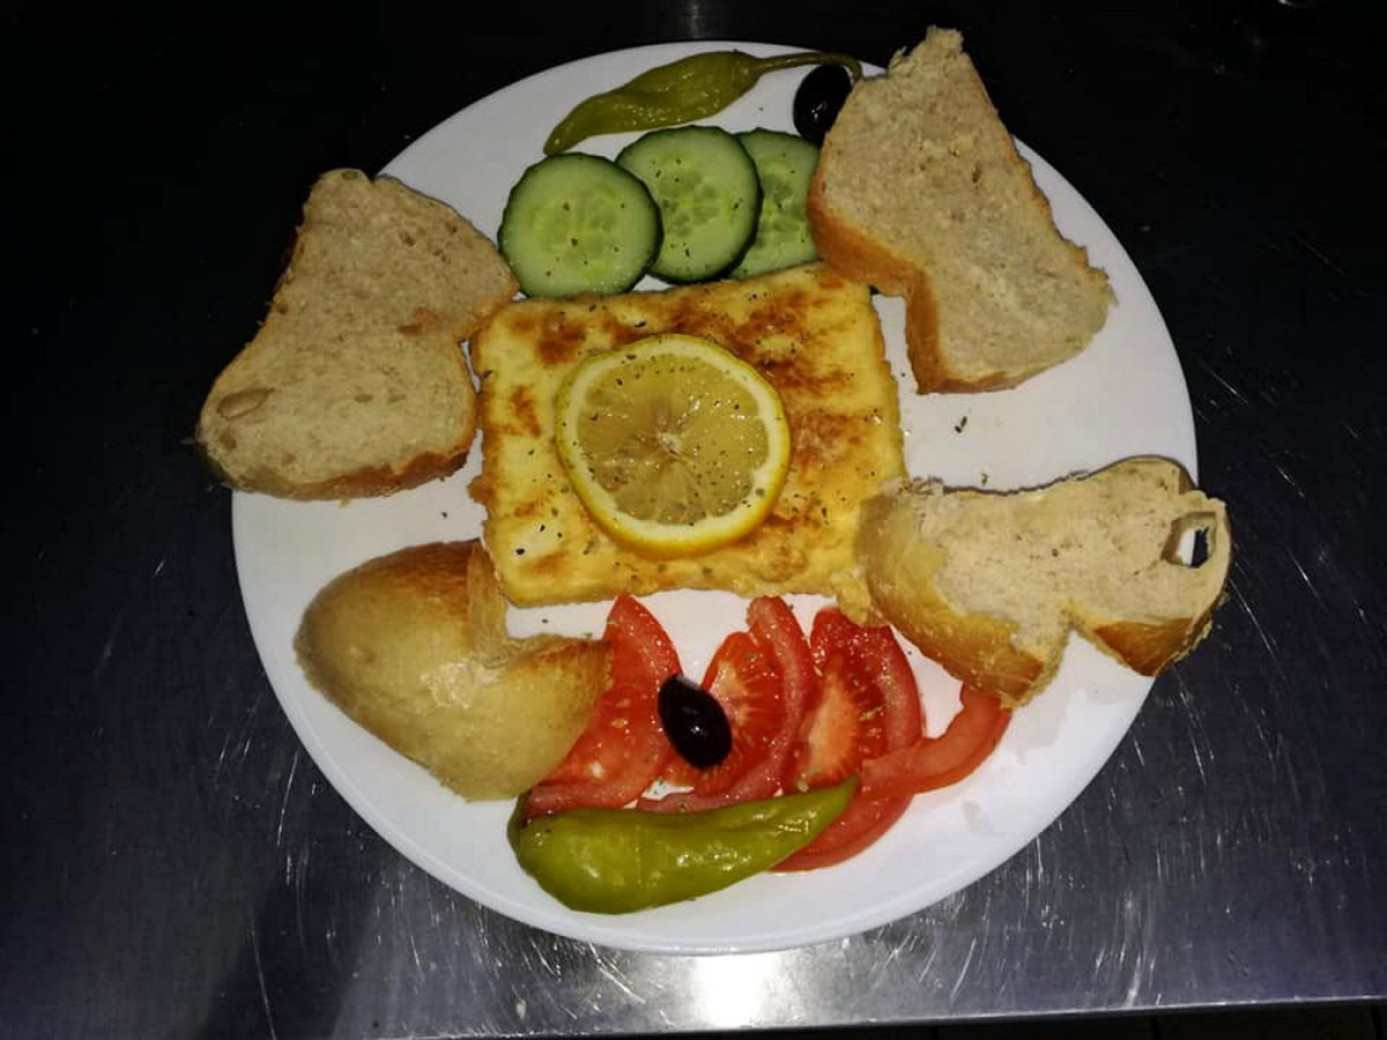 Saganaki mit Brot im Bistro Cafe Creme in Dortmund Westerfilde bei Taki